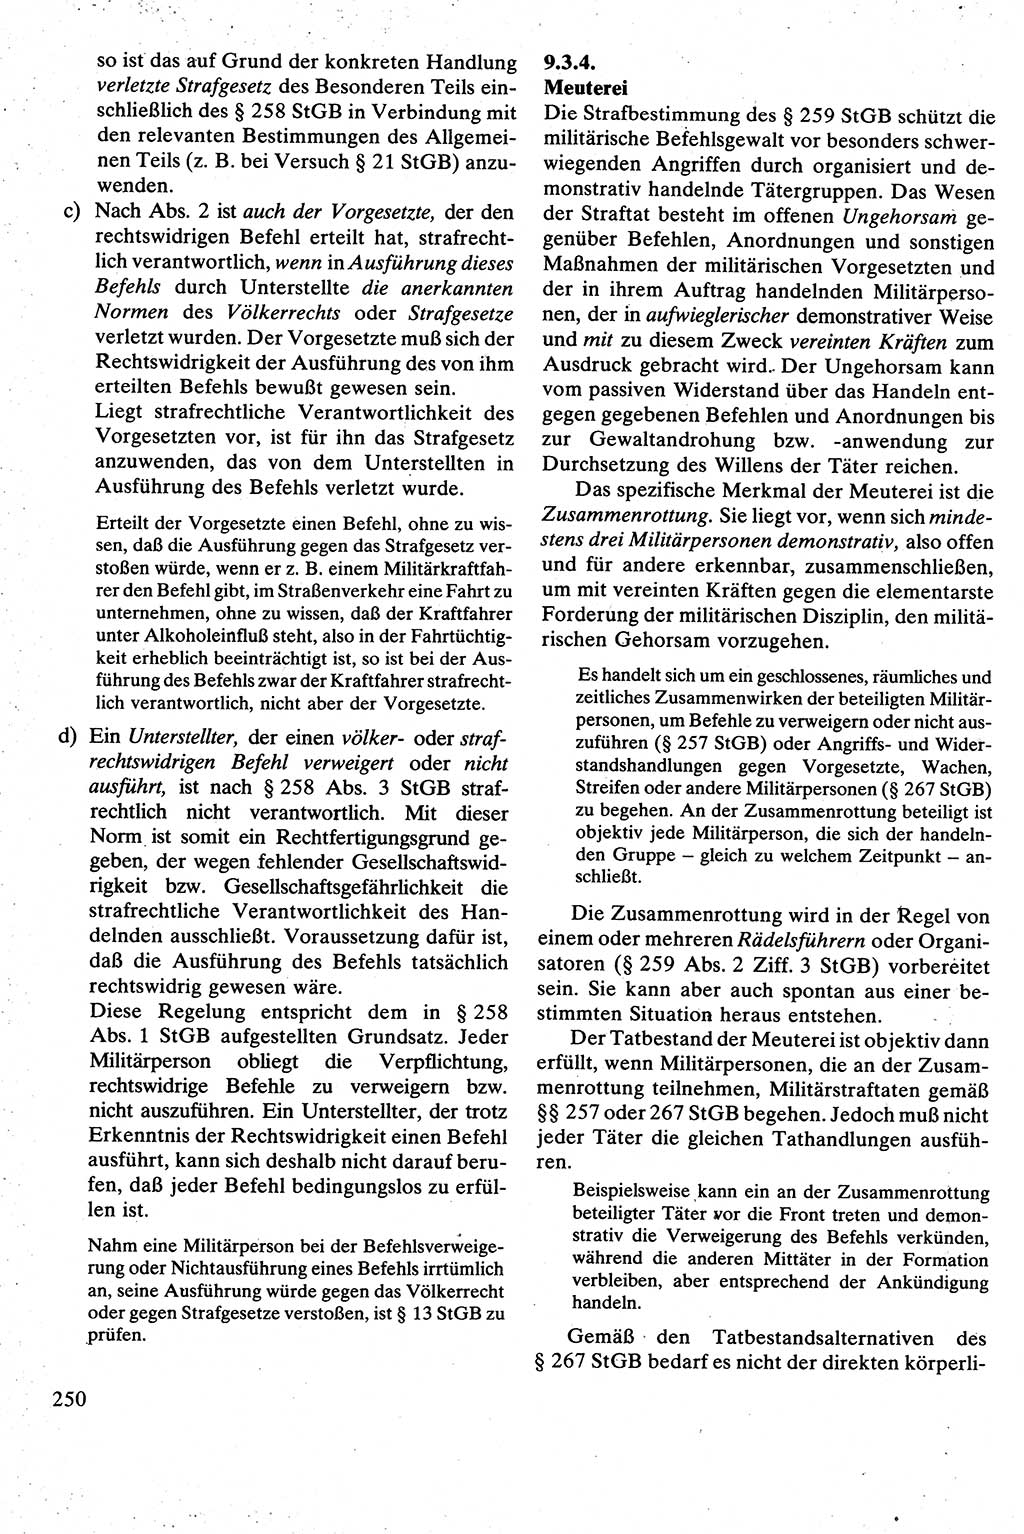 Strafrecht [Deutsche Demokratische Republik (DDR)], Besonderer Teil, Lehrbuch 1981, Seite 250 (Strafr. DDR BT Lb. 1981, S. 250)